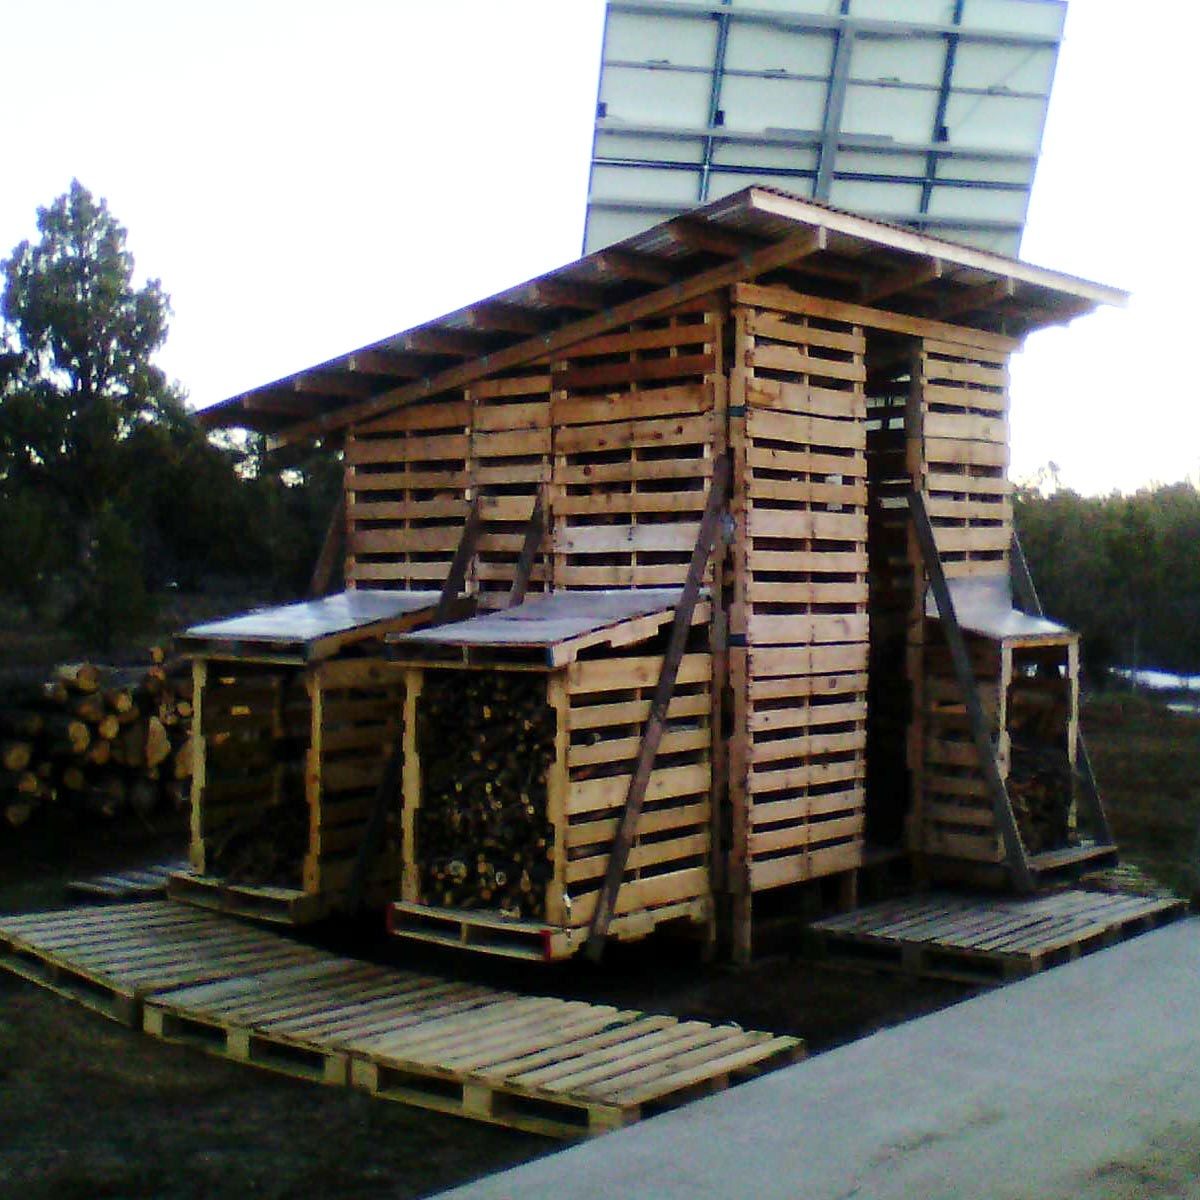 Pallet Shed for Storing Firewood â€